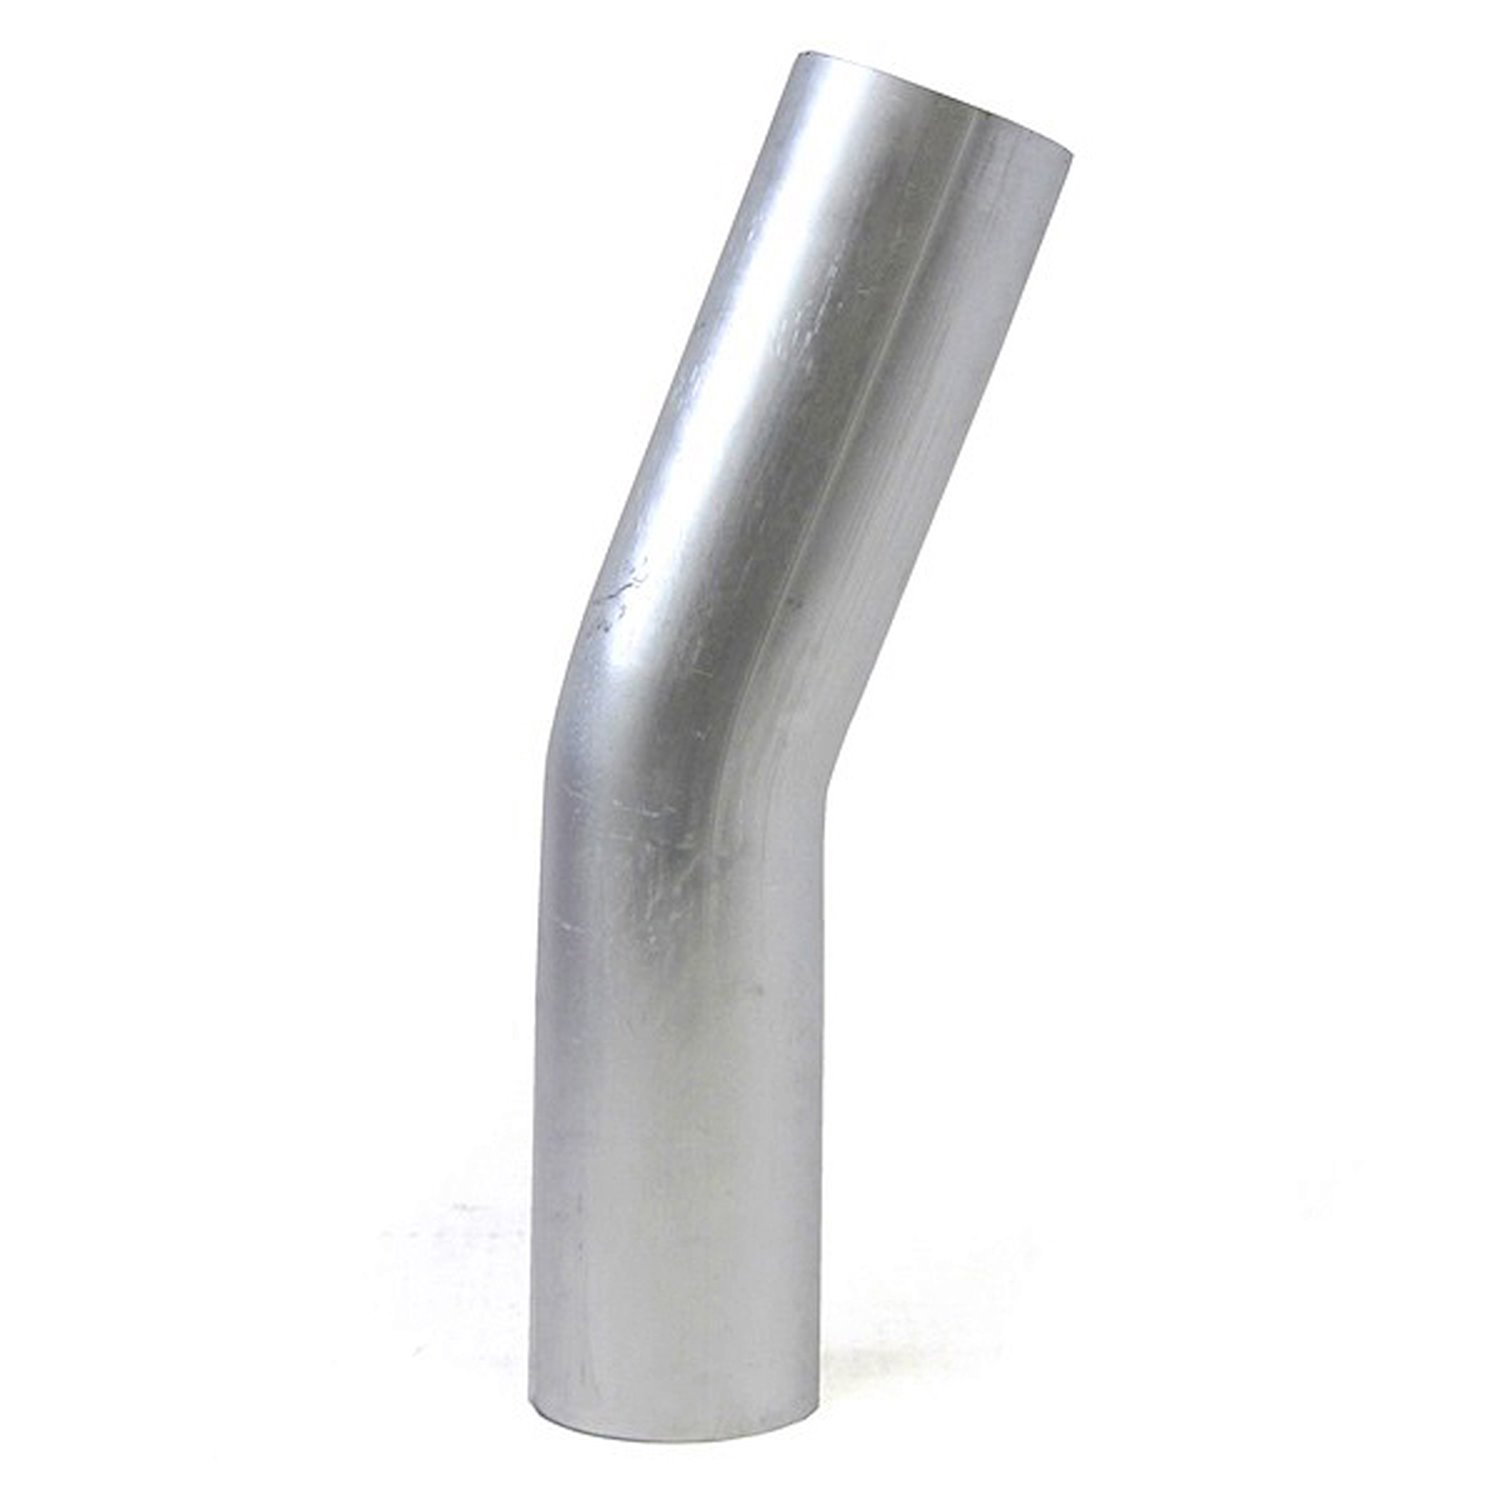 AT20-225-CLR-3 Aluminum Elbow Tube, 6061 Aluminum, 20-Degree Bend Elbow Tubing, 2-1/4 in. OD, Large Radius, 3 in. CLR